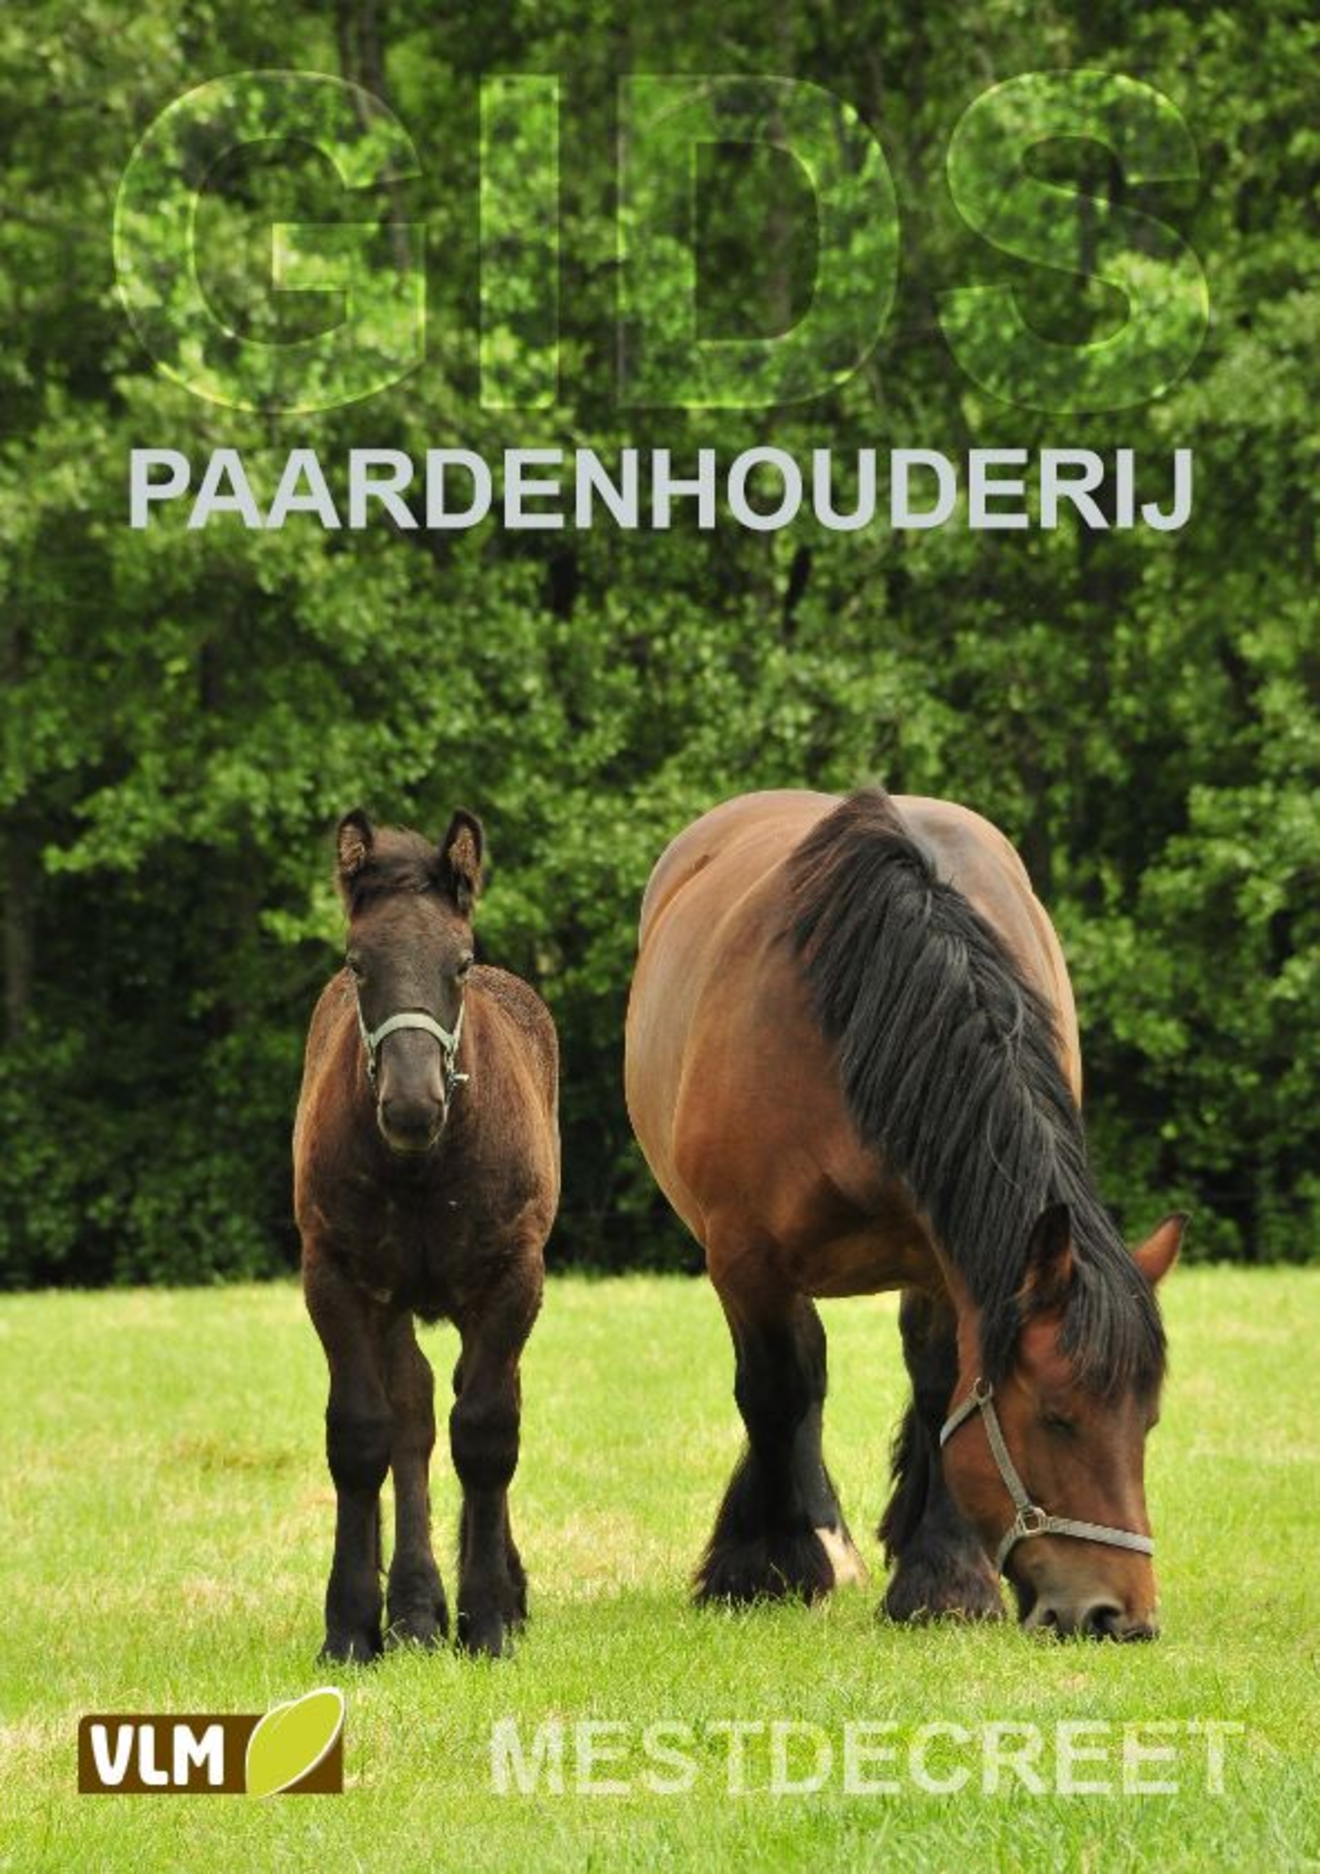 Nieuwe brochure rond het Mestdecreet, specifiek voor paardenhouders